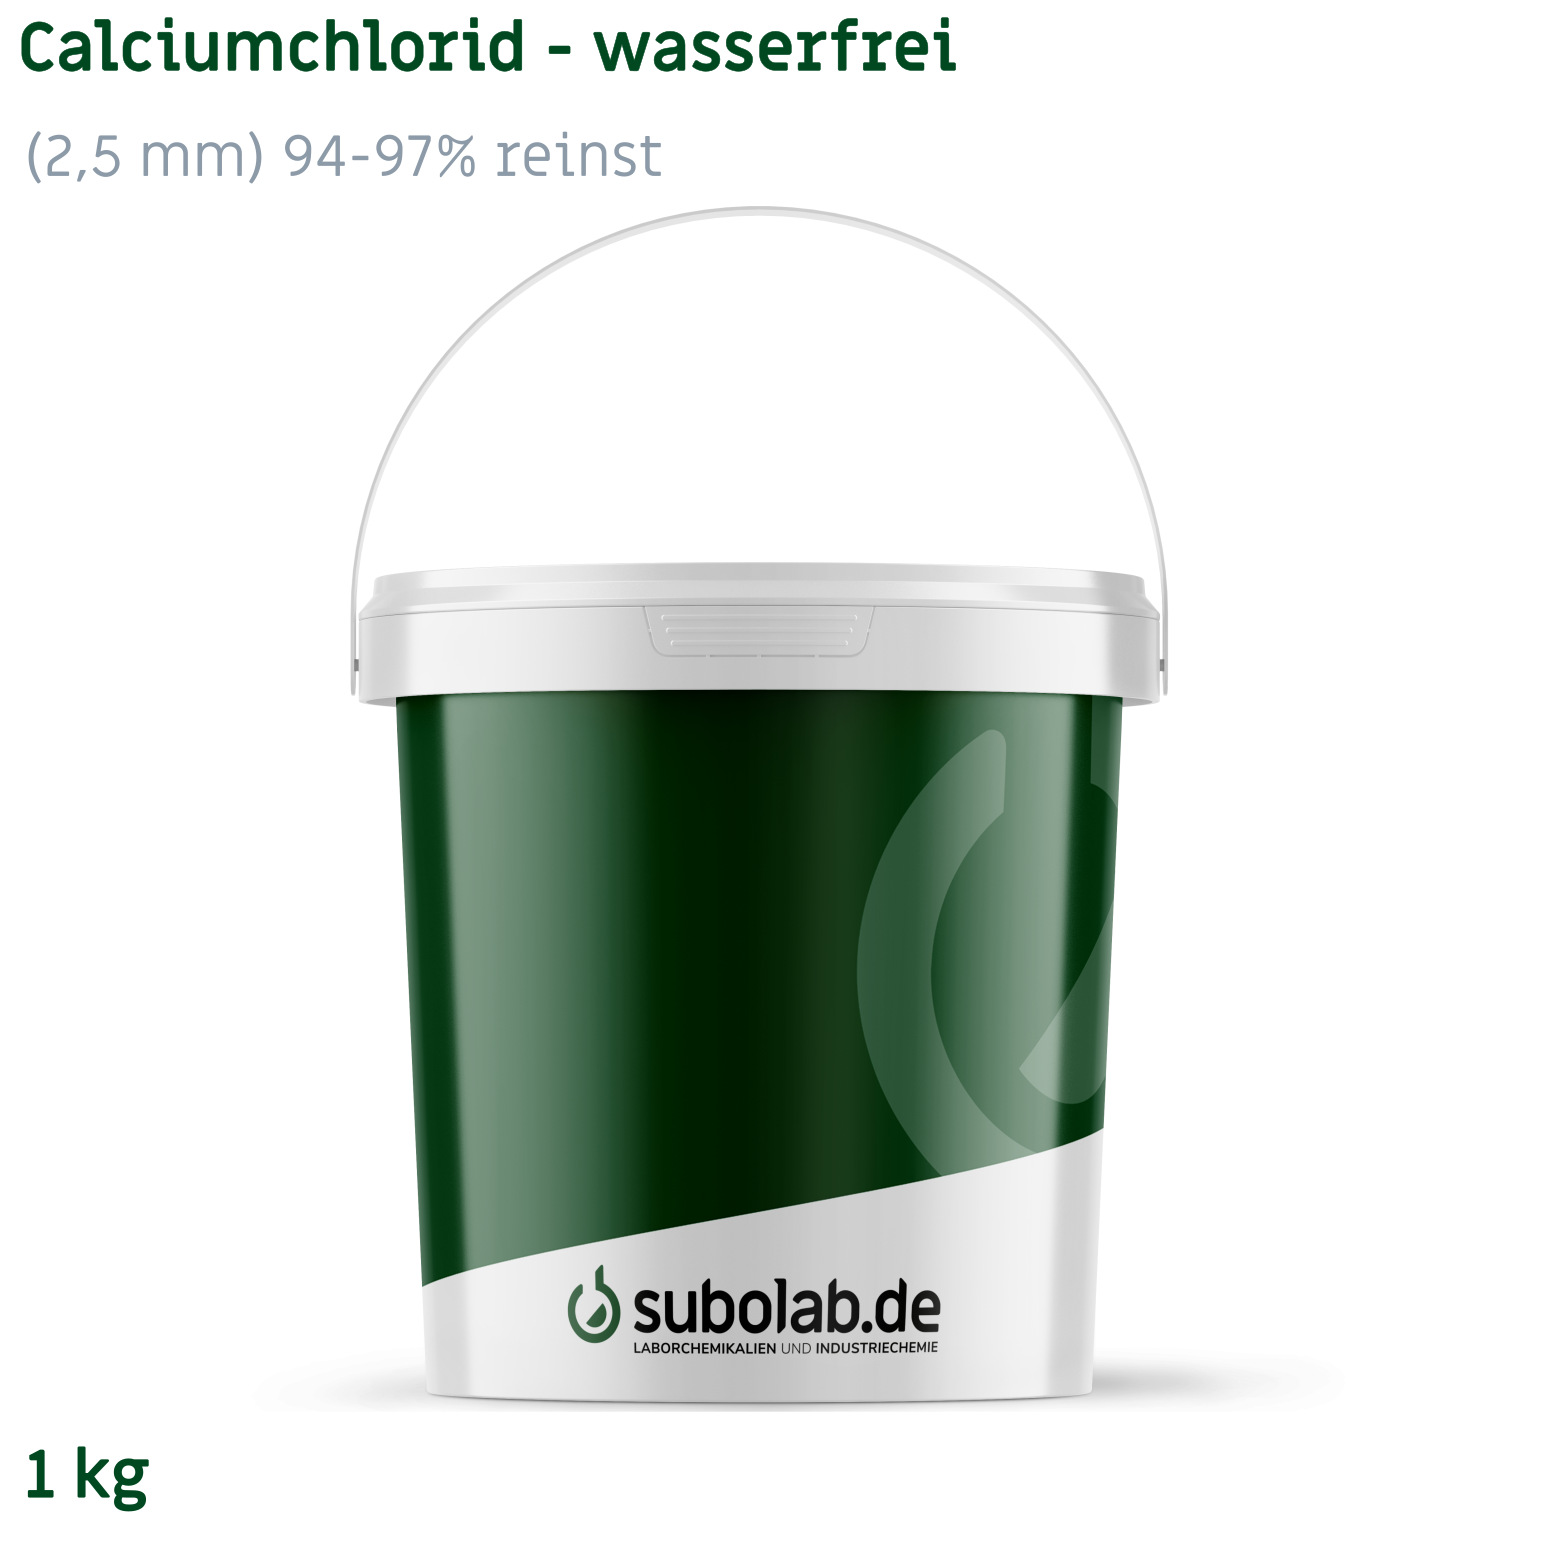 Bild von Calciumchlorid - wasserfrei gekörnt (2,5 mm) 94-97% reinst (1 kg)